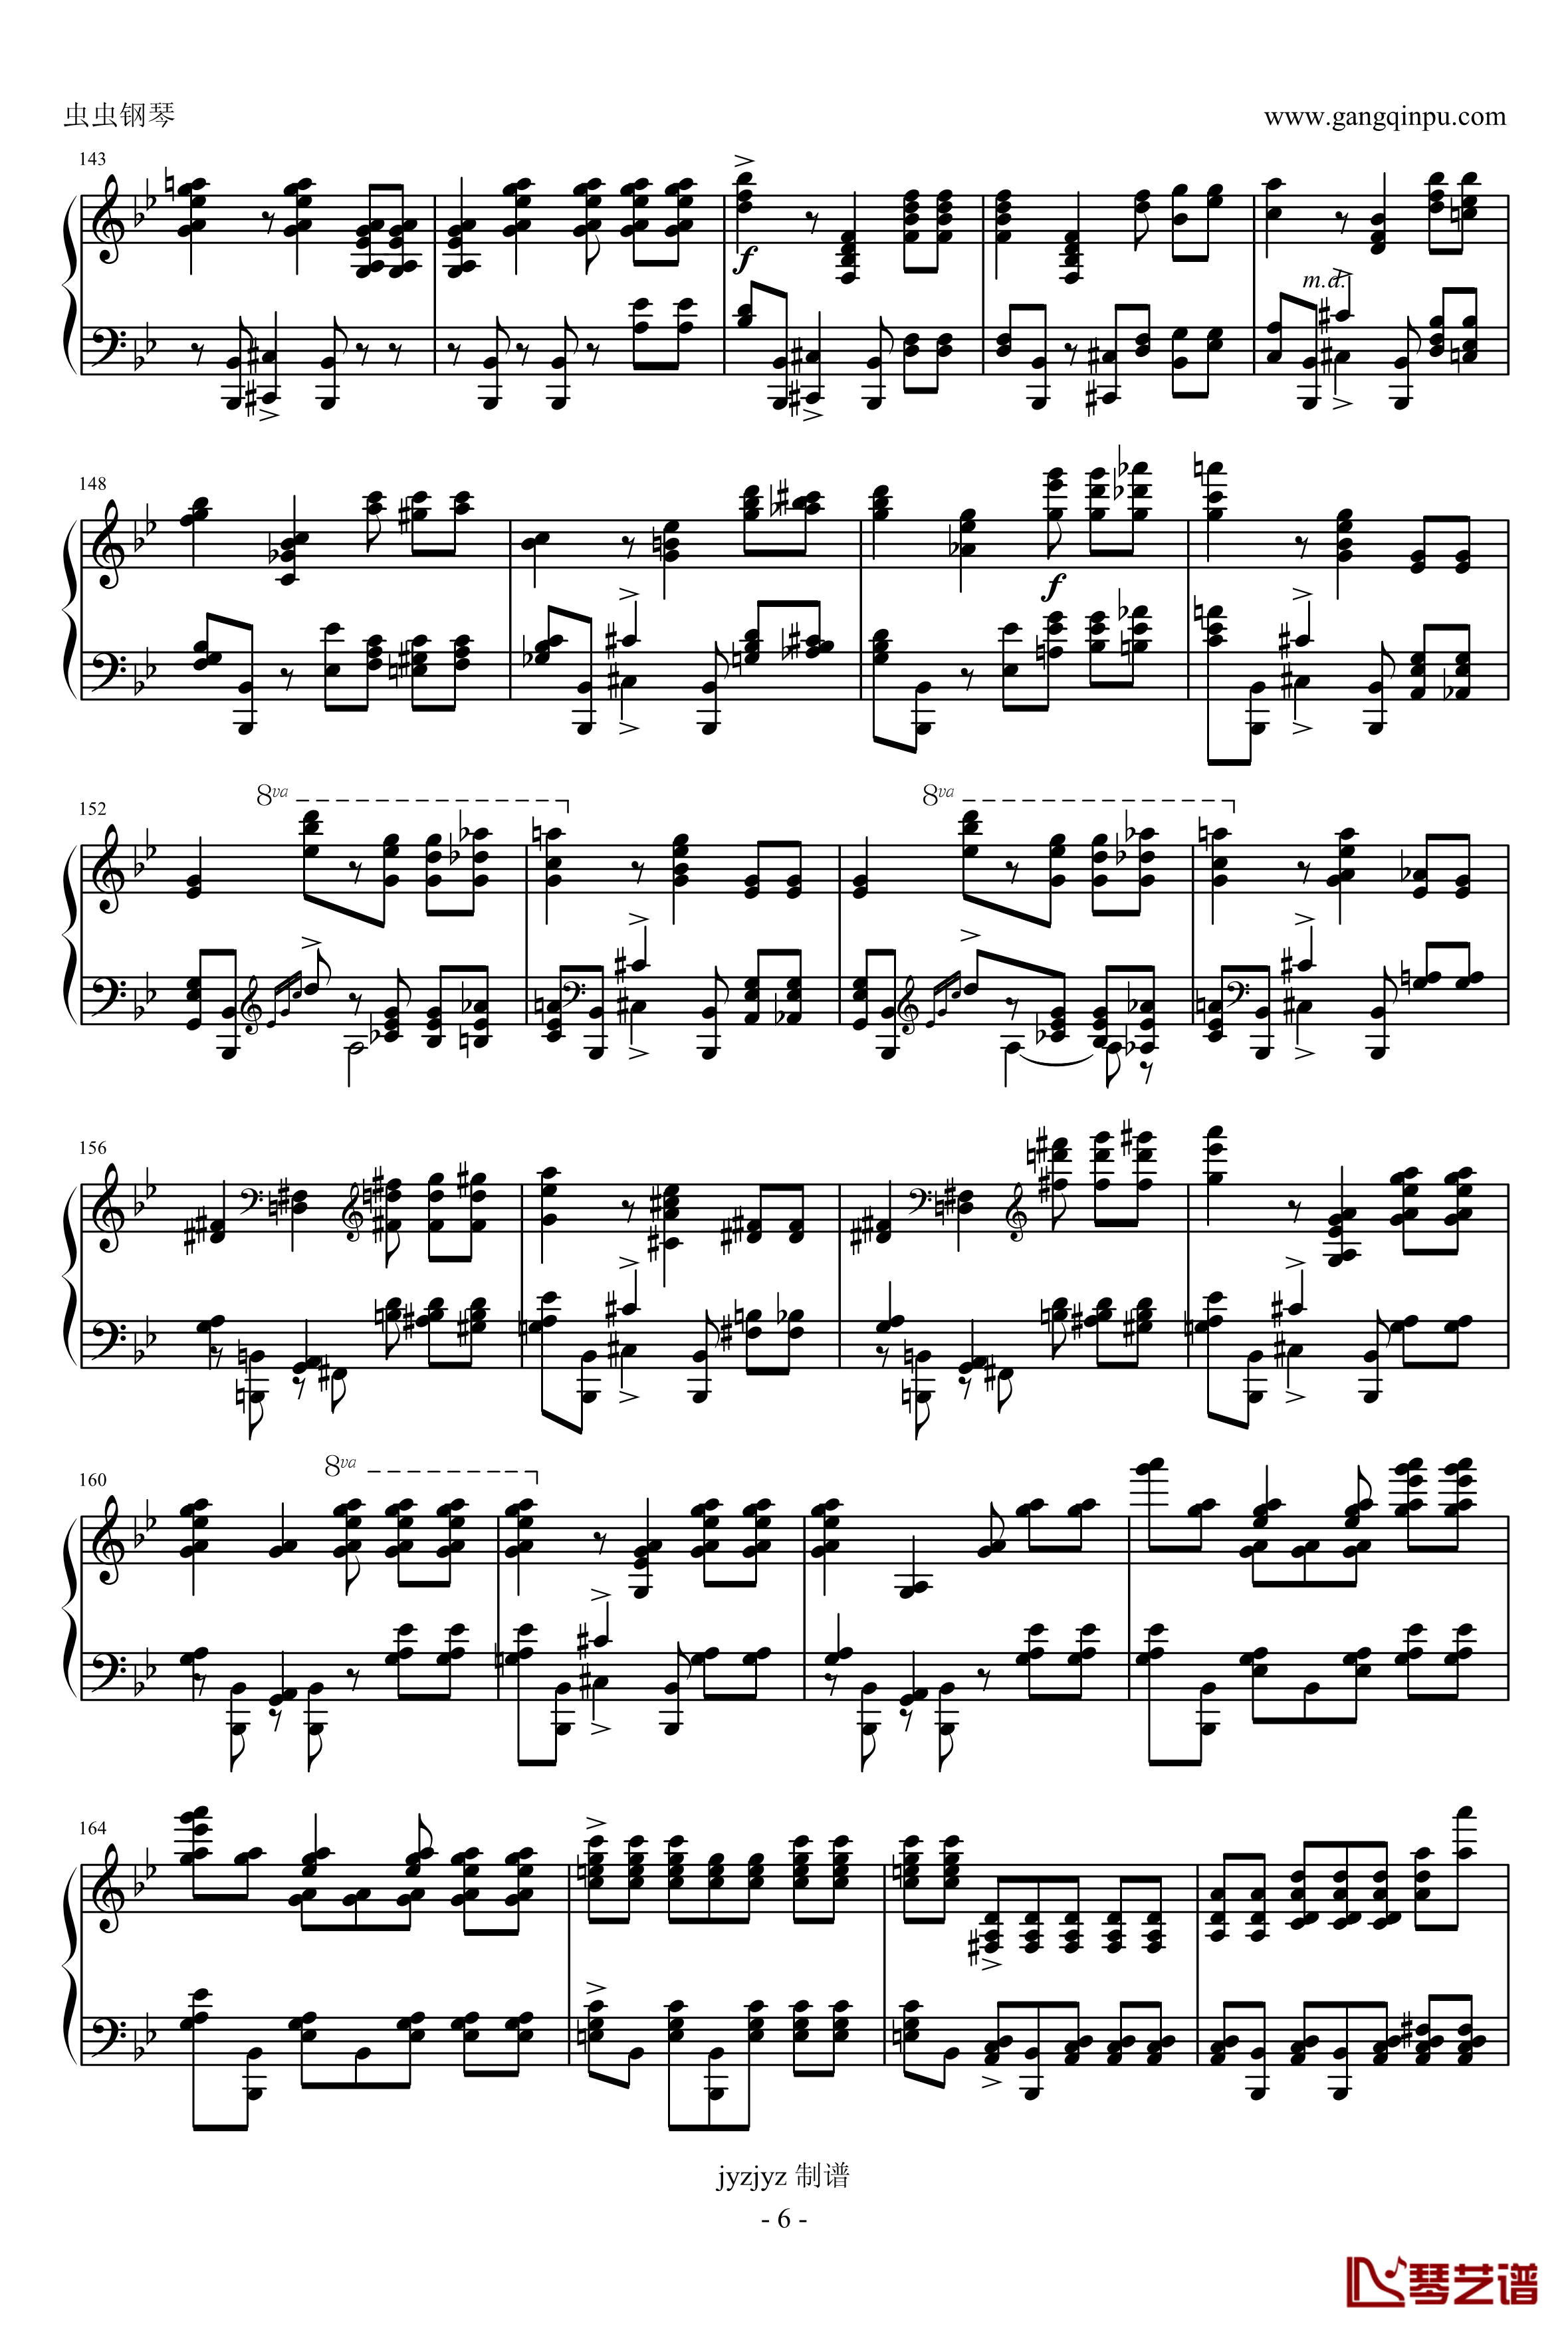 普罗科耶夫第7号钢琴奏鸣曲第3乐章钢琴谱-普罗科非耶夫6